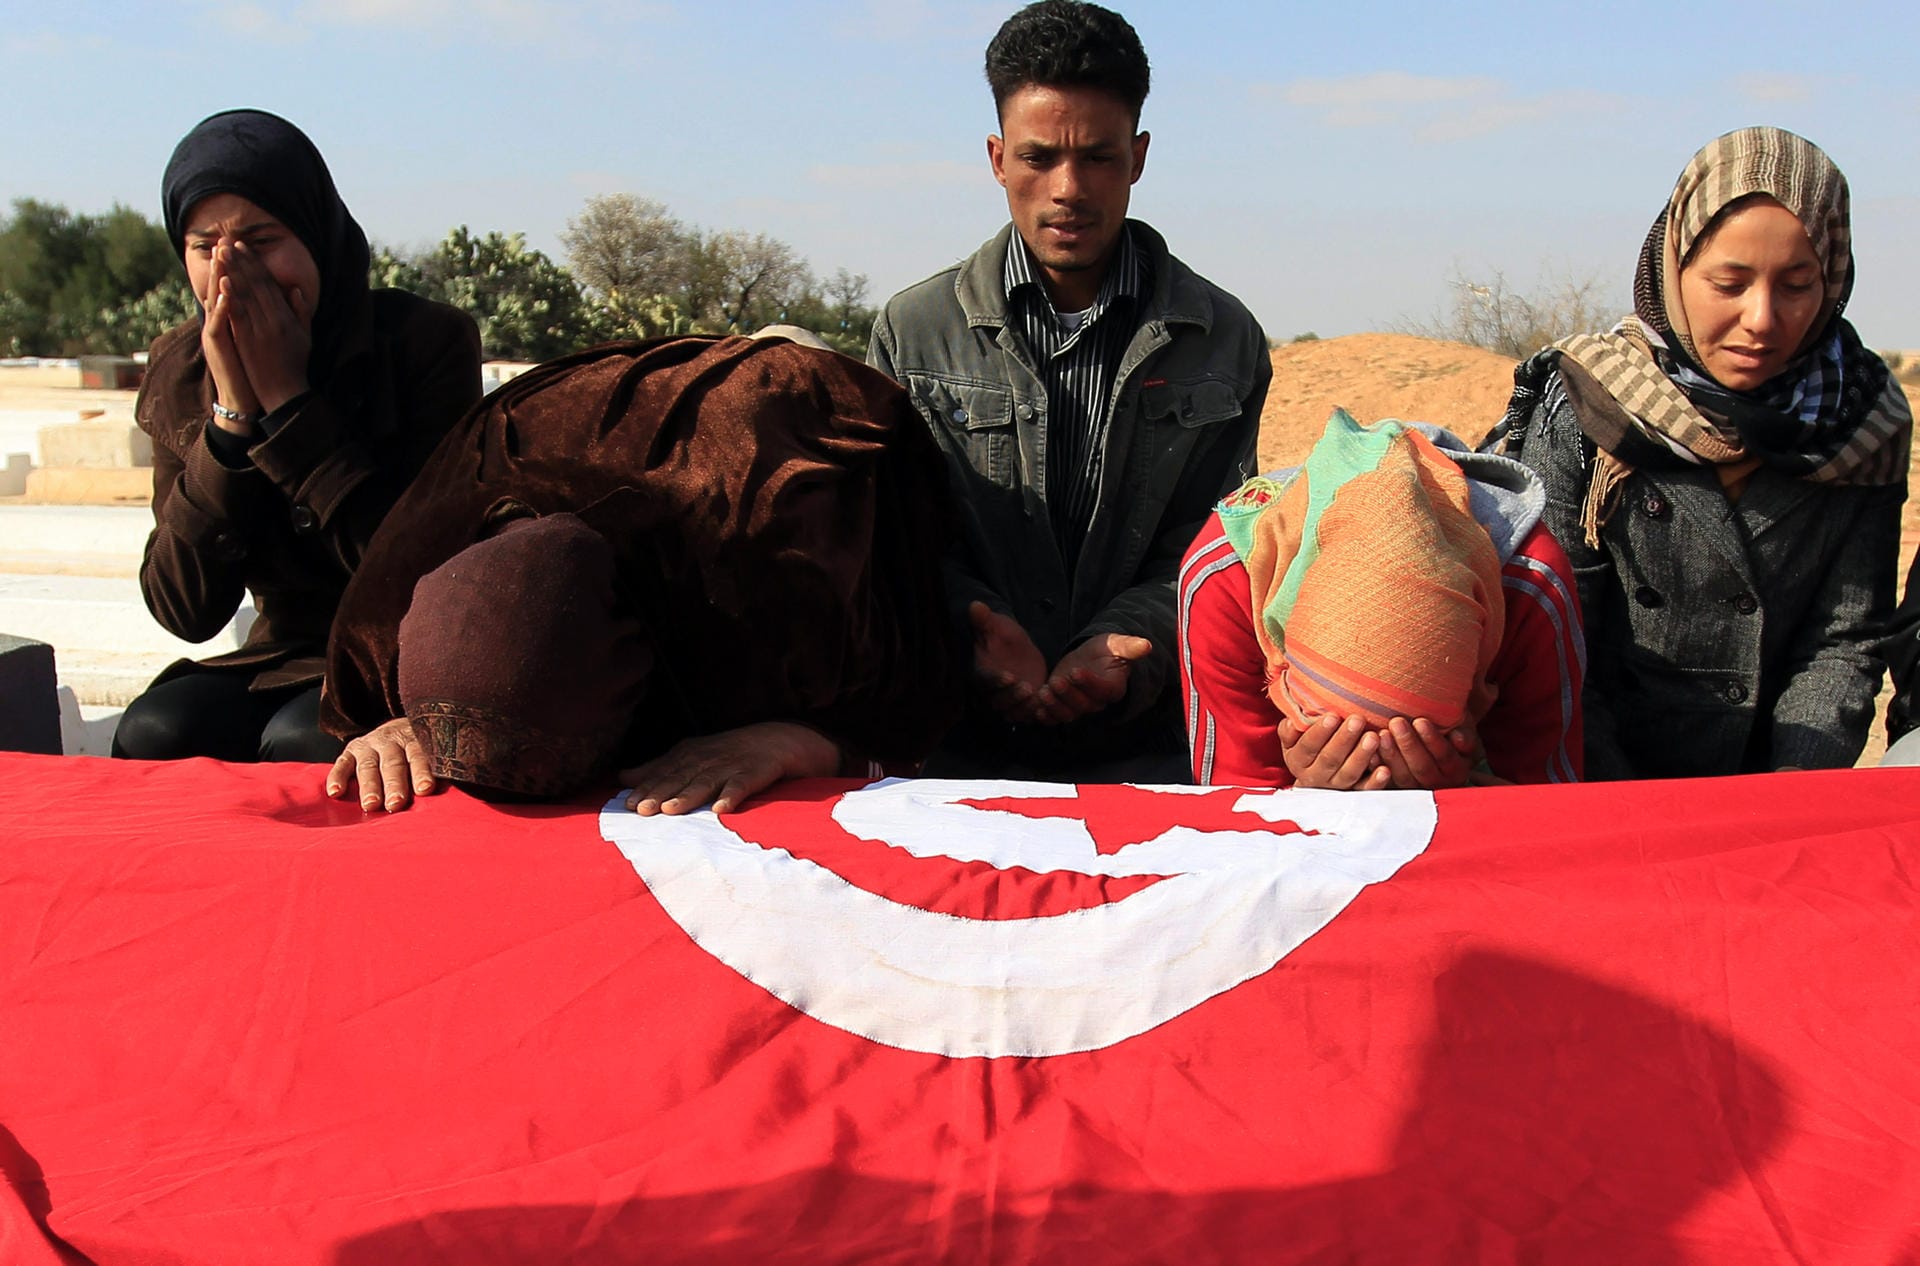 17. Dezember 2010: In Tunesien zündet sich der Gemüsehändler Mohamed Bouazizi aus Protest gegen die Schikanen der Behörden und die schlechten Lebensbedingungen im Land selbst an. Sein verzweifelter Hilferuf ist die Initialzündung für die Revolution in Tunesien und der Beginn des arabischen Frühlings, der im Laufe des Jahres 2011 zahlreiche Länder ergreift. Das Bild zeigt die Familie am Grab des verstorbenen Gemüsehändlers.